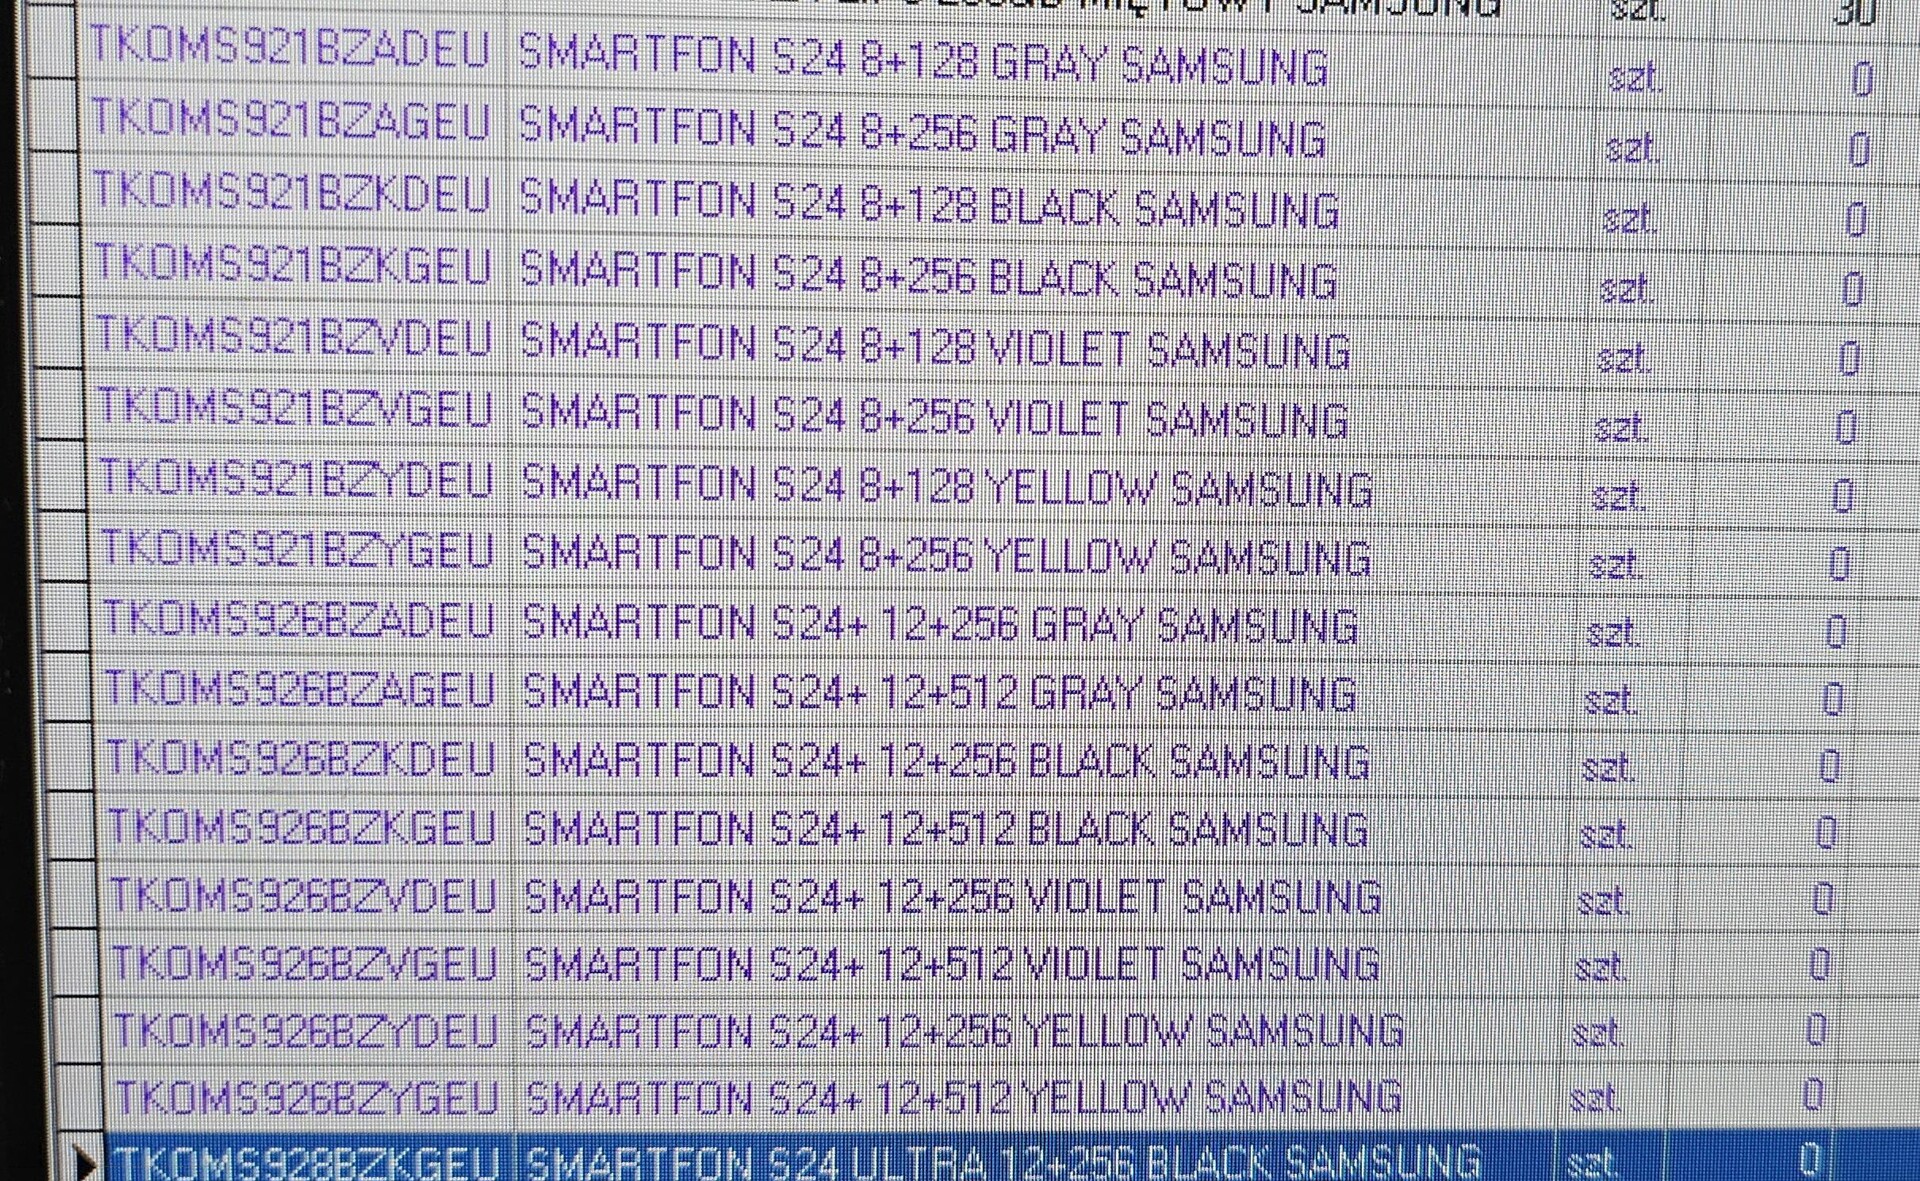 Samsung Galaxy S24, S24+ und Galaxy S24 Ultra Gerüchte: Durch die Bank mehr  RAM und keine 128 GB Speicher mehr -  News